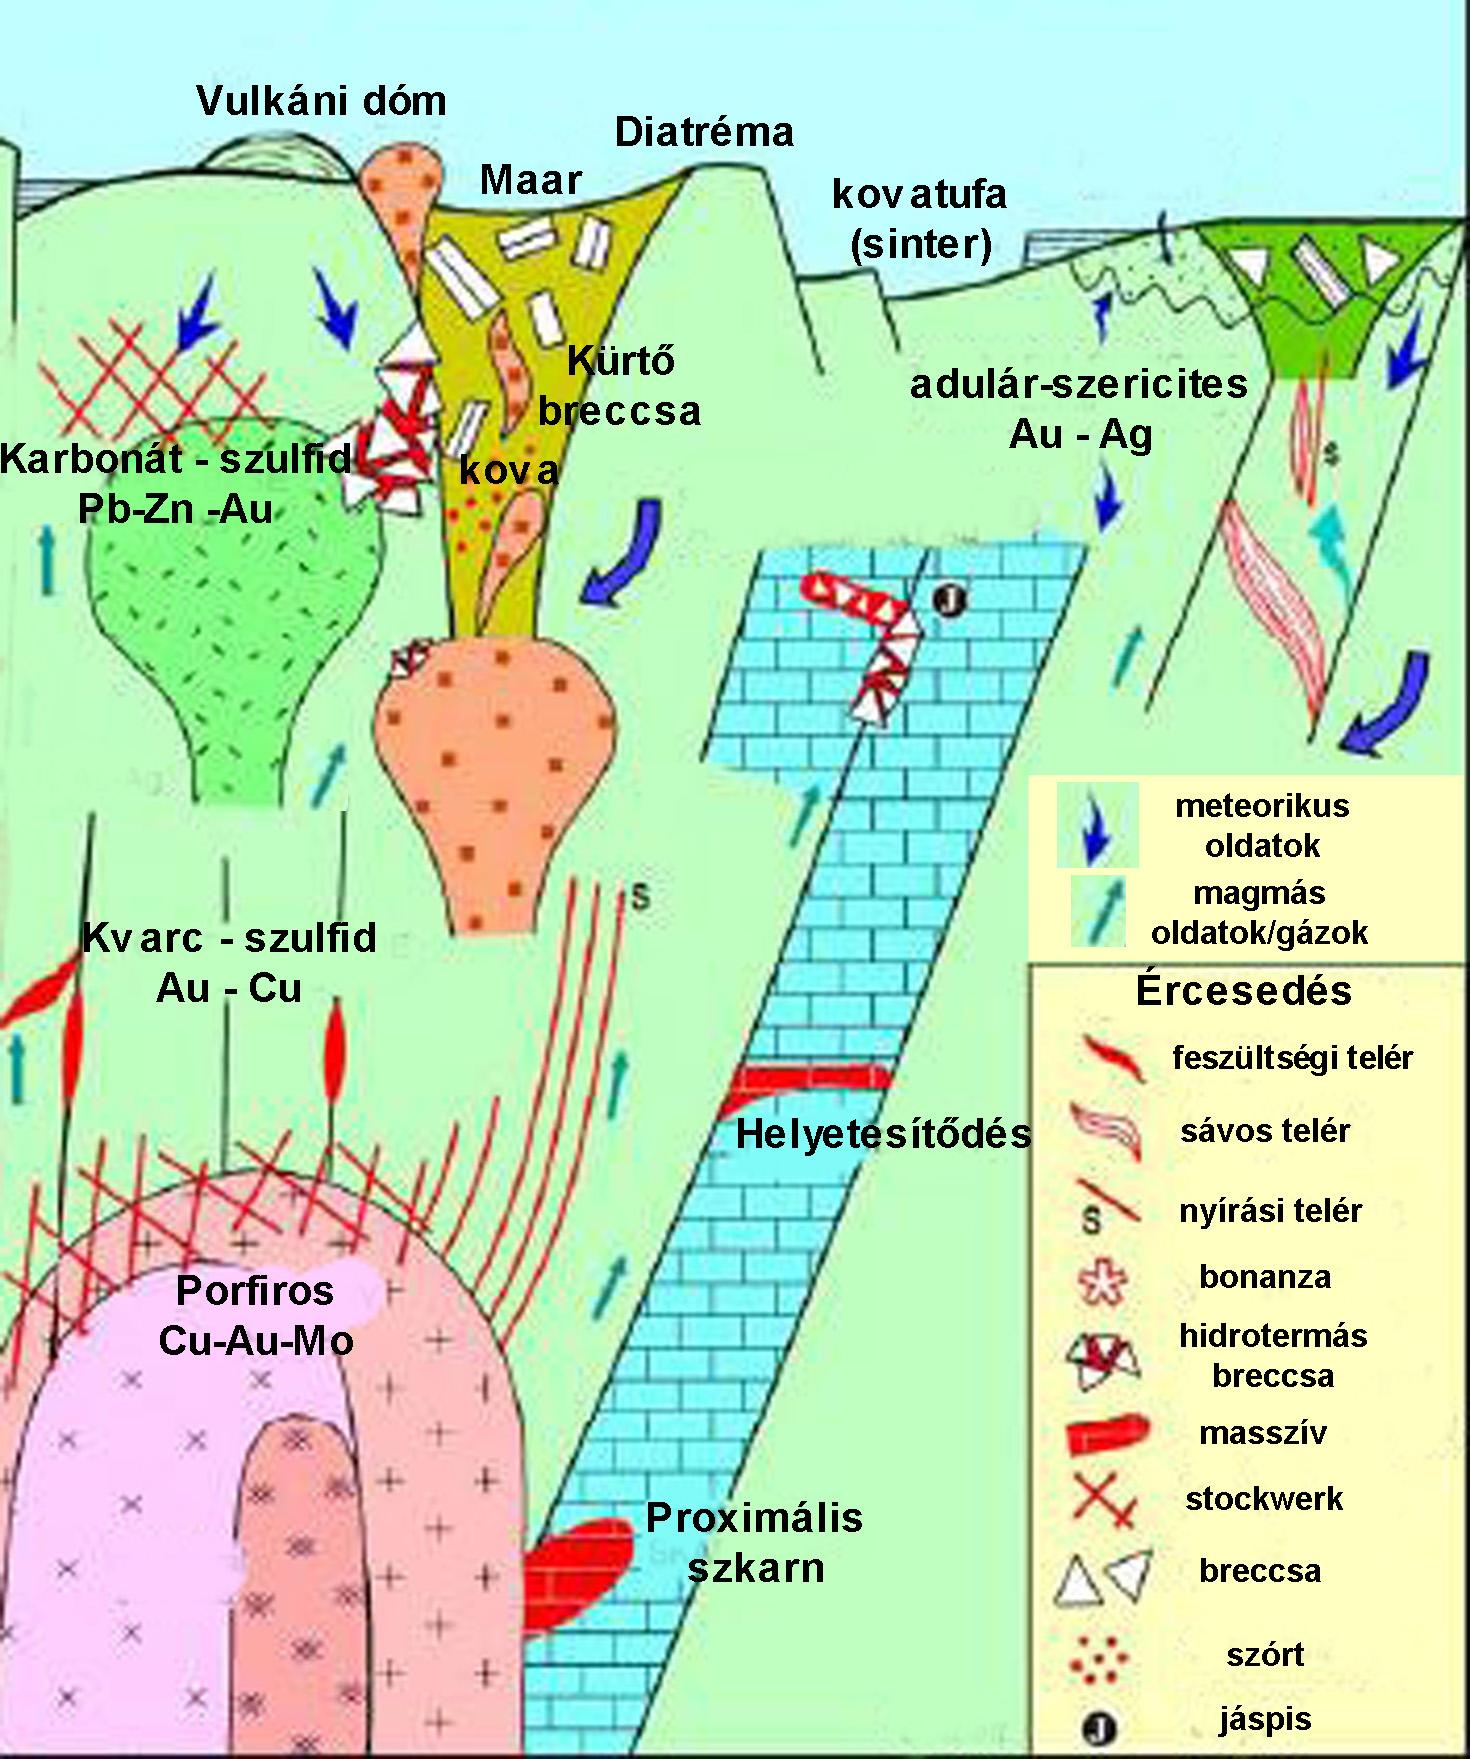 2.2.2) Az alábbi ábrán bemutatott a vulkáni-magmás hidrotermás rendszerekre vonatkozó képződési